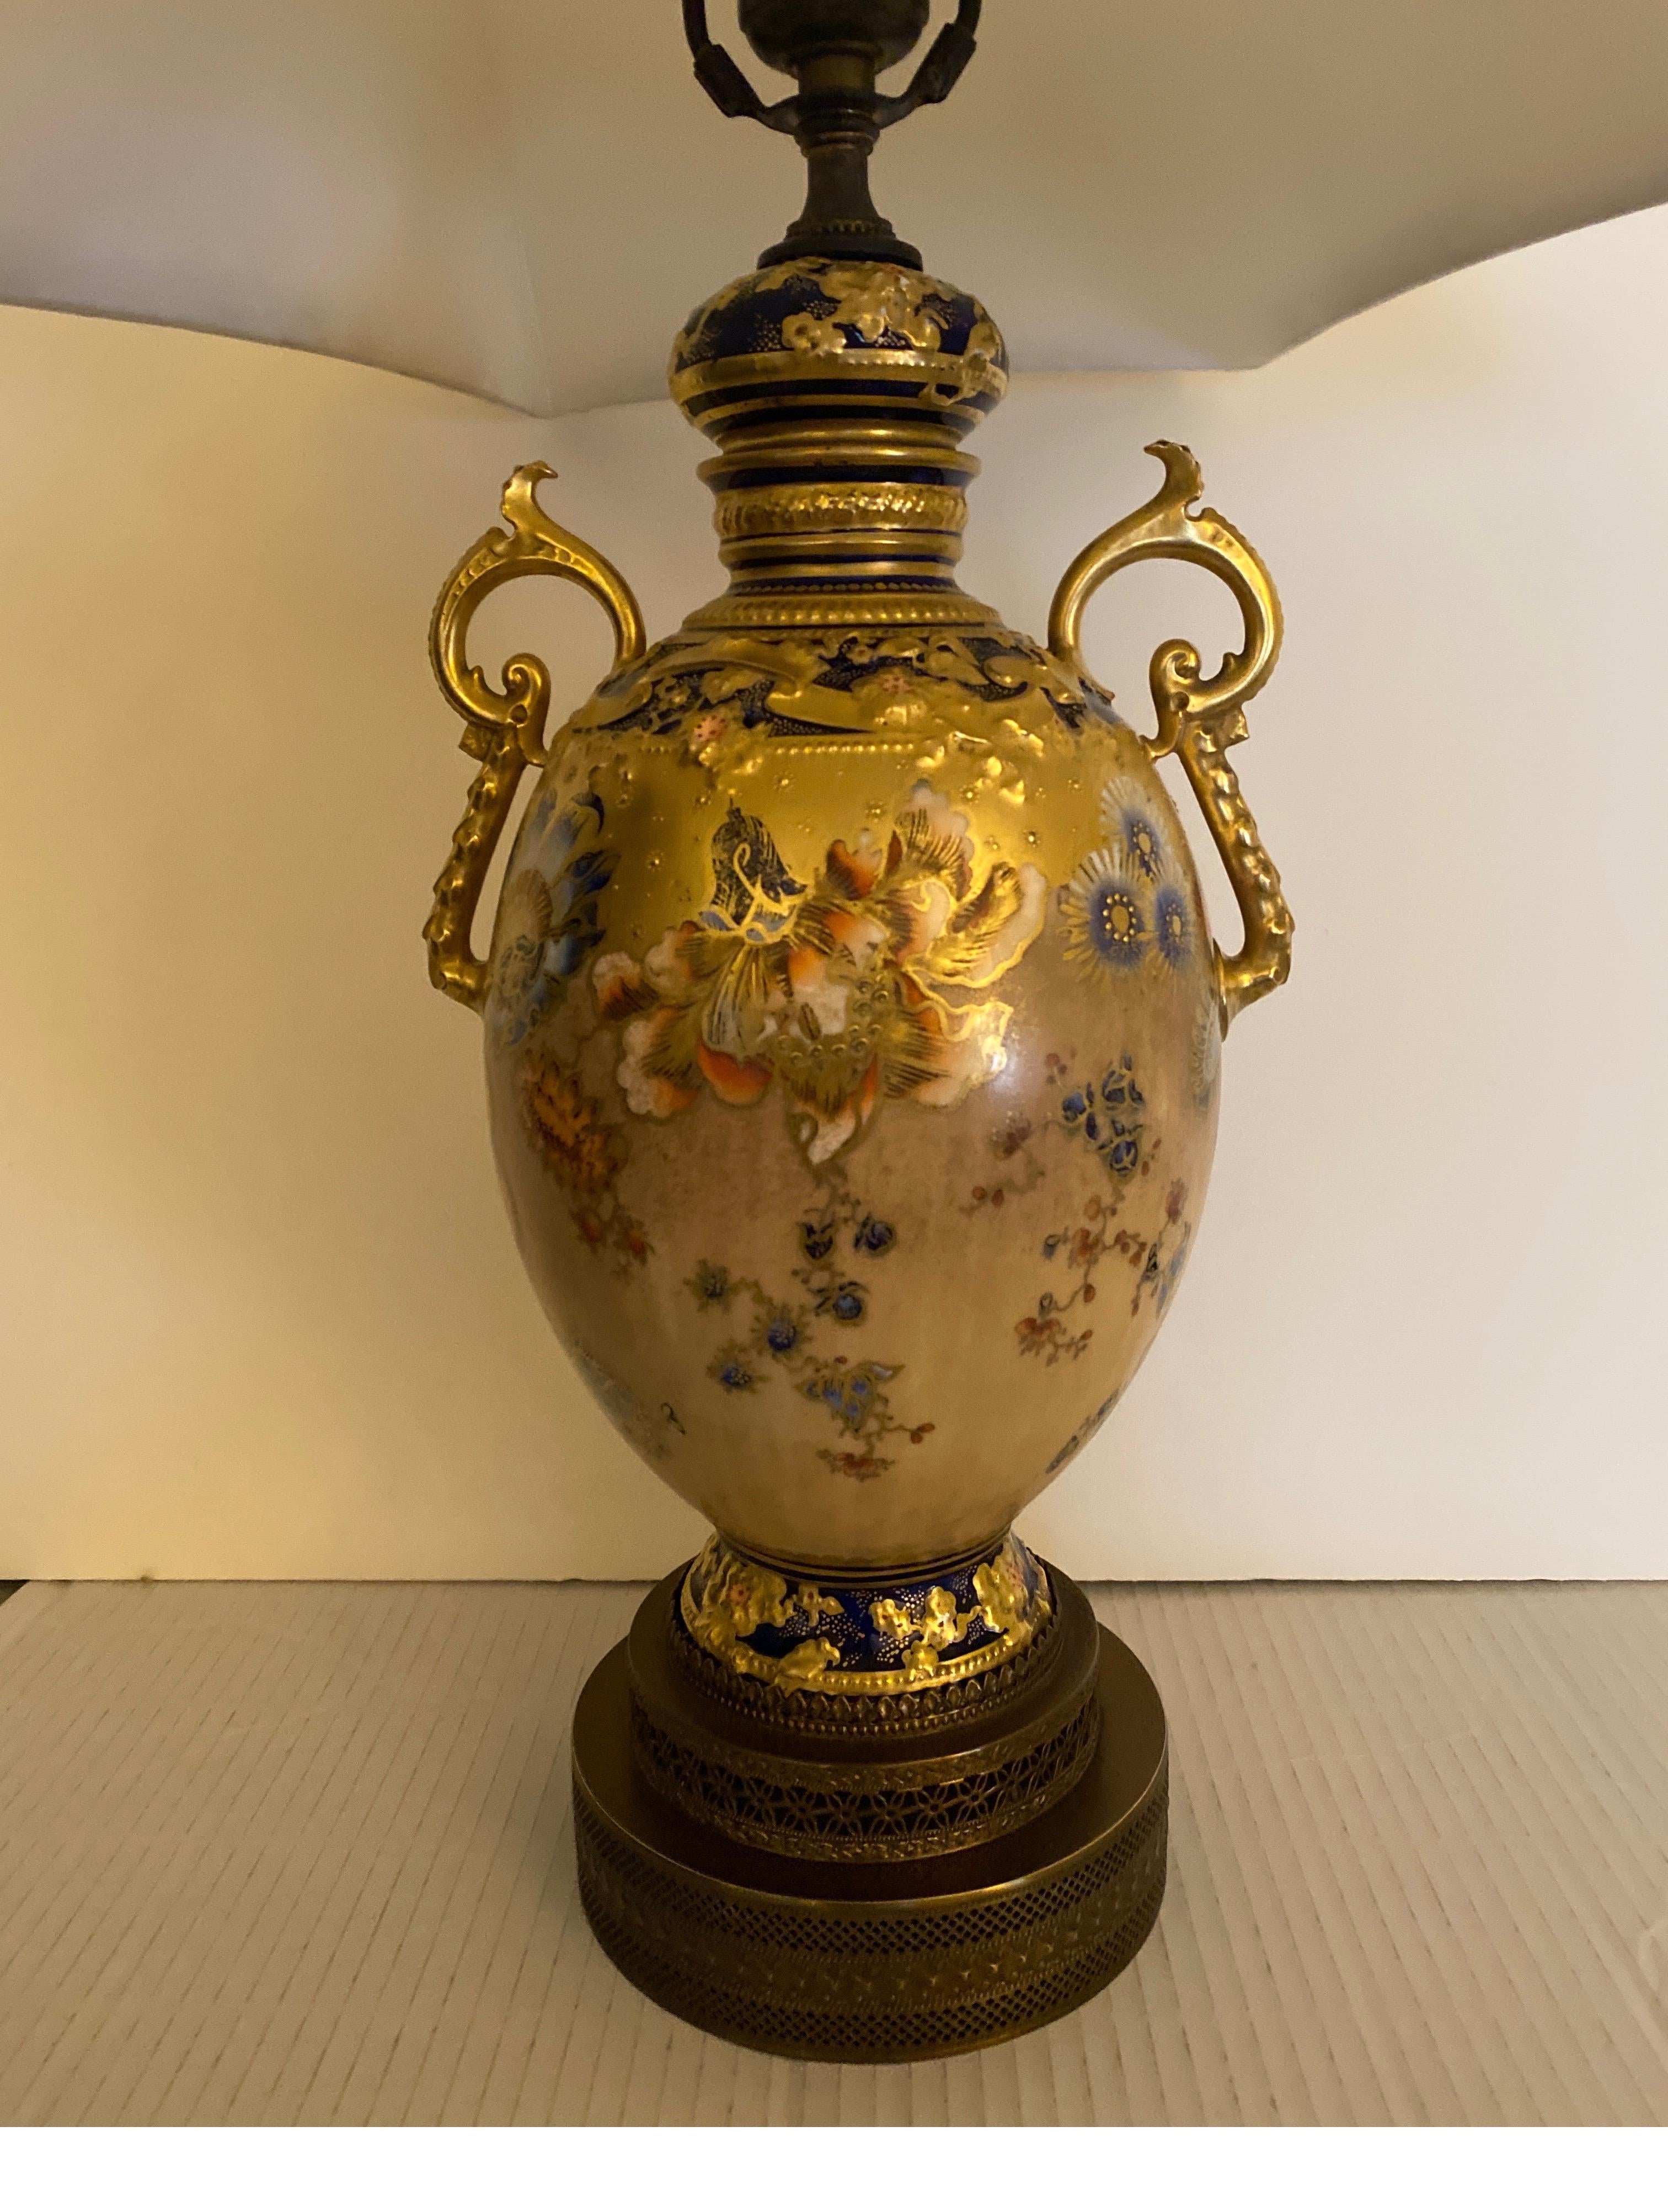 Superbe urne Royal Crown Derby, peinte à la main et dorée, qui sert maintenant de lampe. L'urne peinte en détail présente une décoration florale exotique avec une somptueuse bordure dorée et une couleur d'accent cobalt. La porcelaine a été éclairée